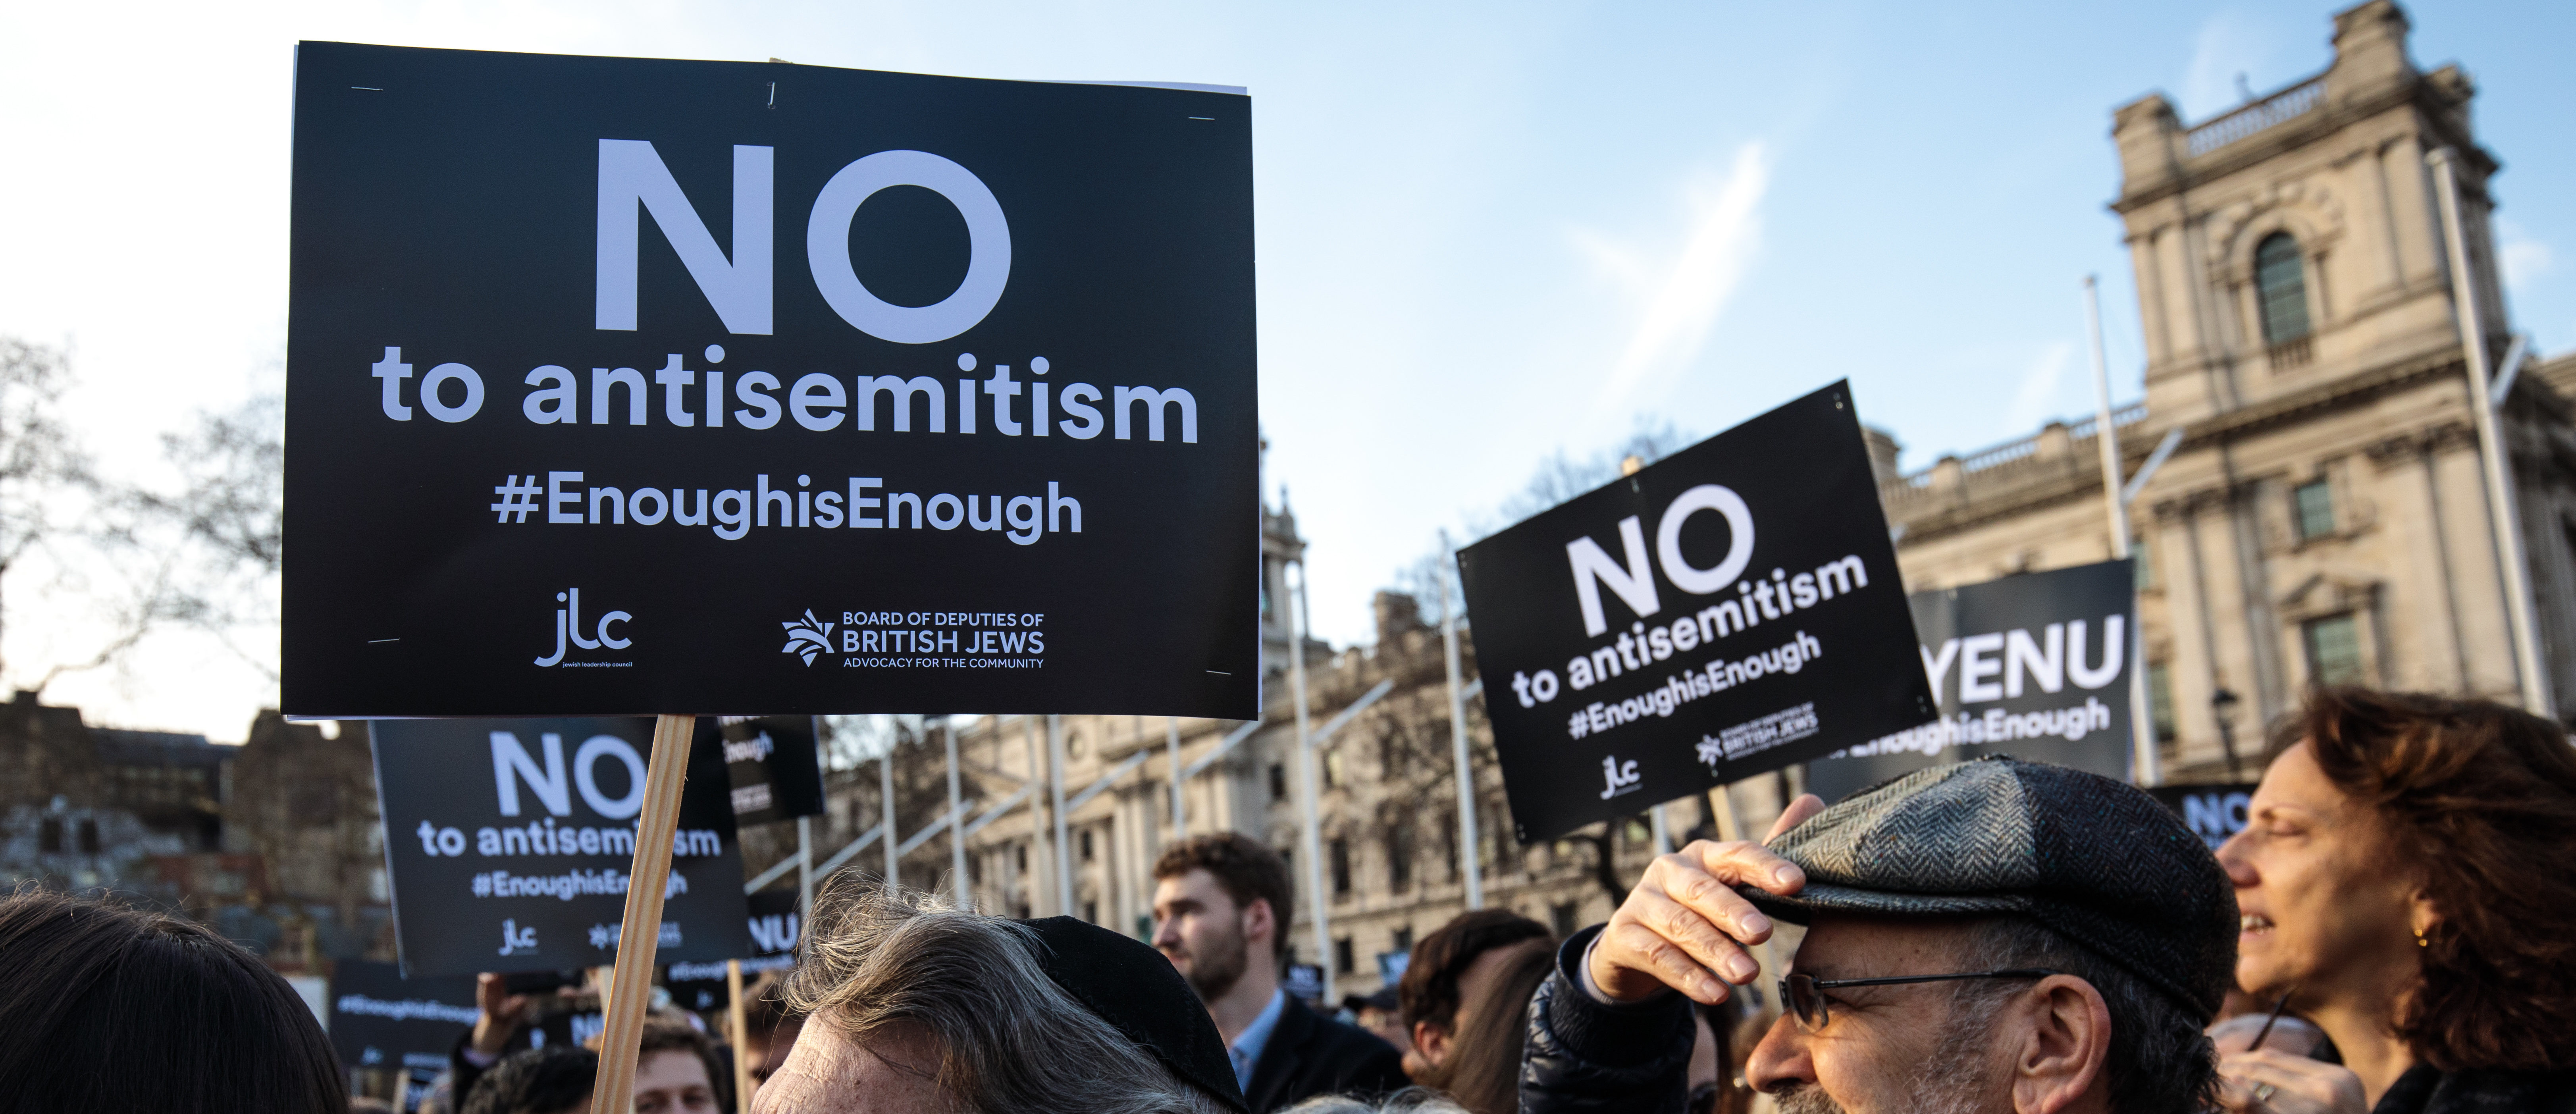 LONDEN, ENGELAND - MAART 26: Demonstranten houden borden vast terwijl ze op 26 maart 2018 in Londen, Engeland demonstreren op Parliament Square tegen antisemitisme.  De Board of Deputies van Britse Joden en de Jewish Leadership Council schreven een brief waarin ze Labour-leider Jeremy Corbyn ervan beschuldigden de kwestie van antisemitisme in zijn partij niet aan te pakken.  De heer Corbyn heeft vandaag zijn excuses aangeboden aan Joodse groepen voor 